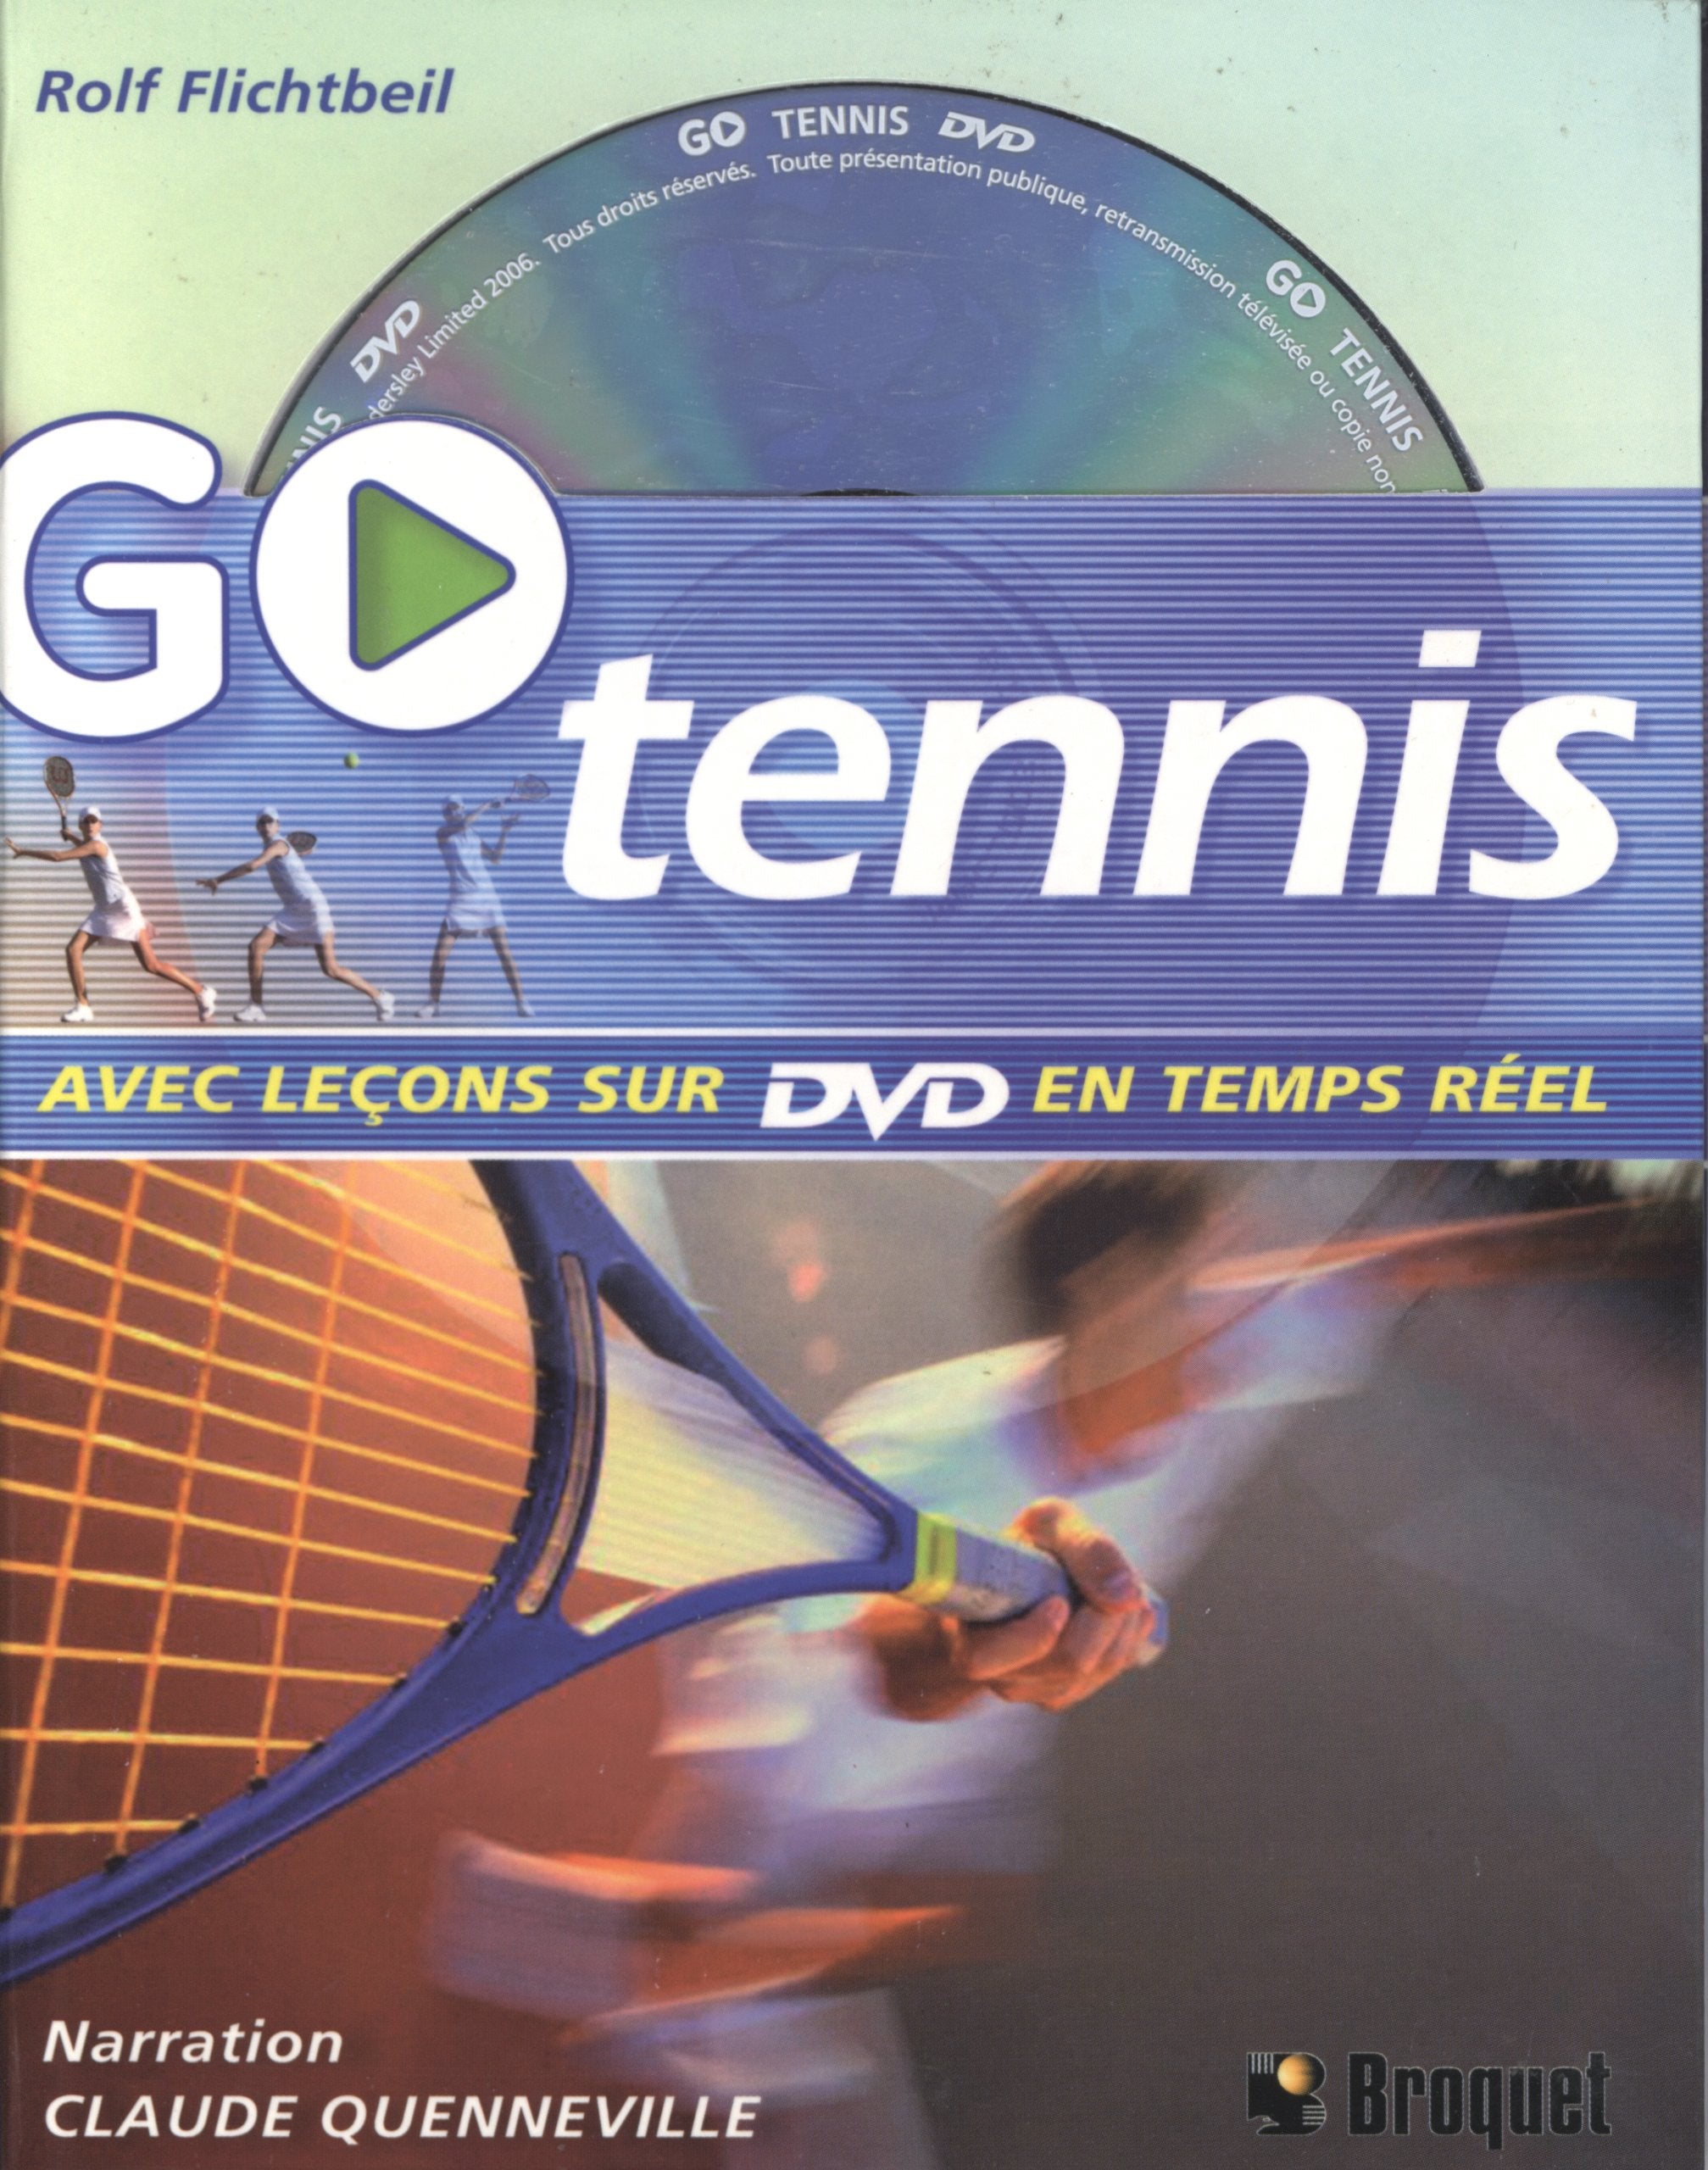 Livre ISBN 2890007987 Go Tennis avec leçons sur DVD en temps réel (Rolf Flichtbeil)